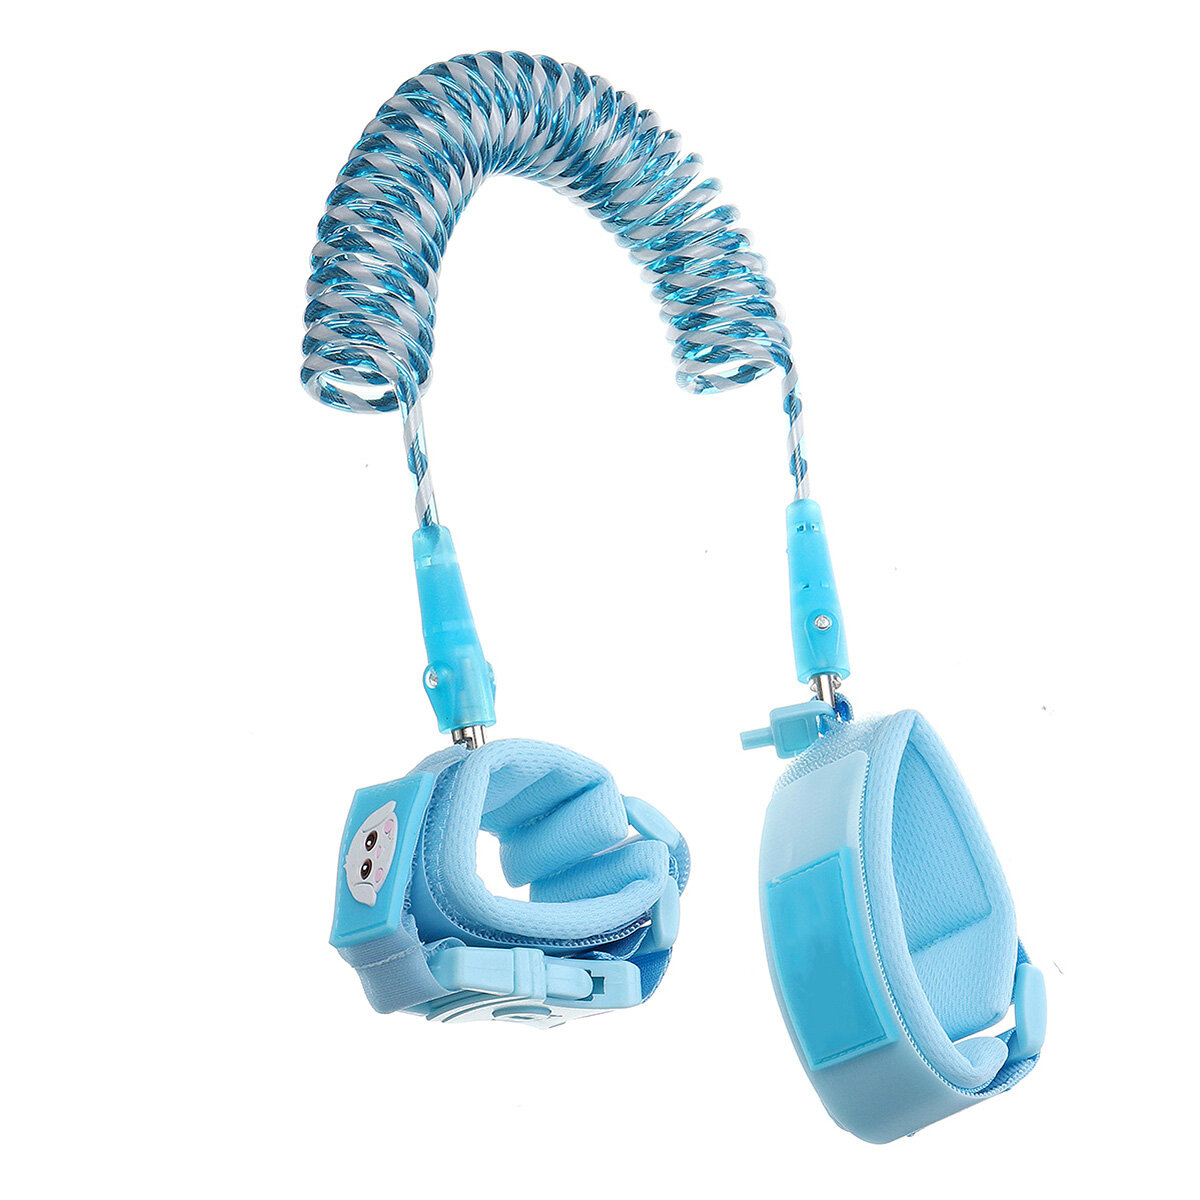 Dispositif anti-perte à 360° avec ceinture réfléchissante pour enfant et harnais de sécurité pour bébé